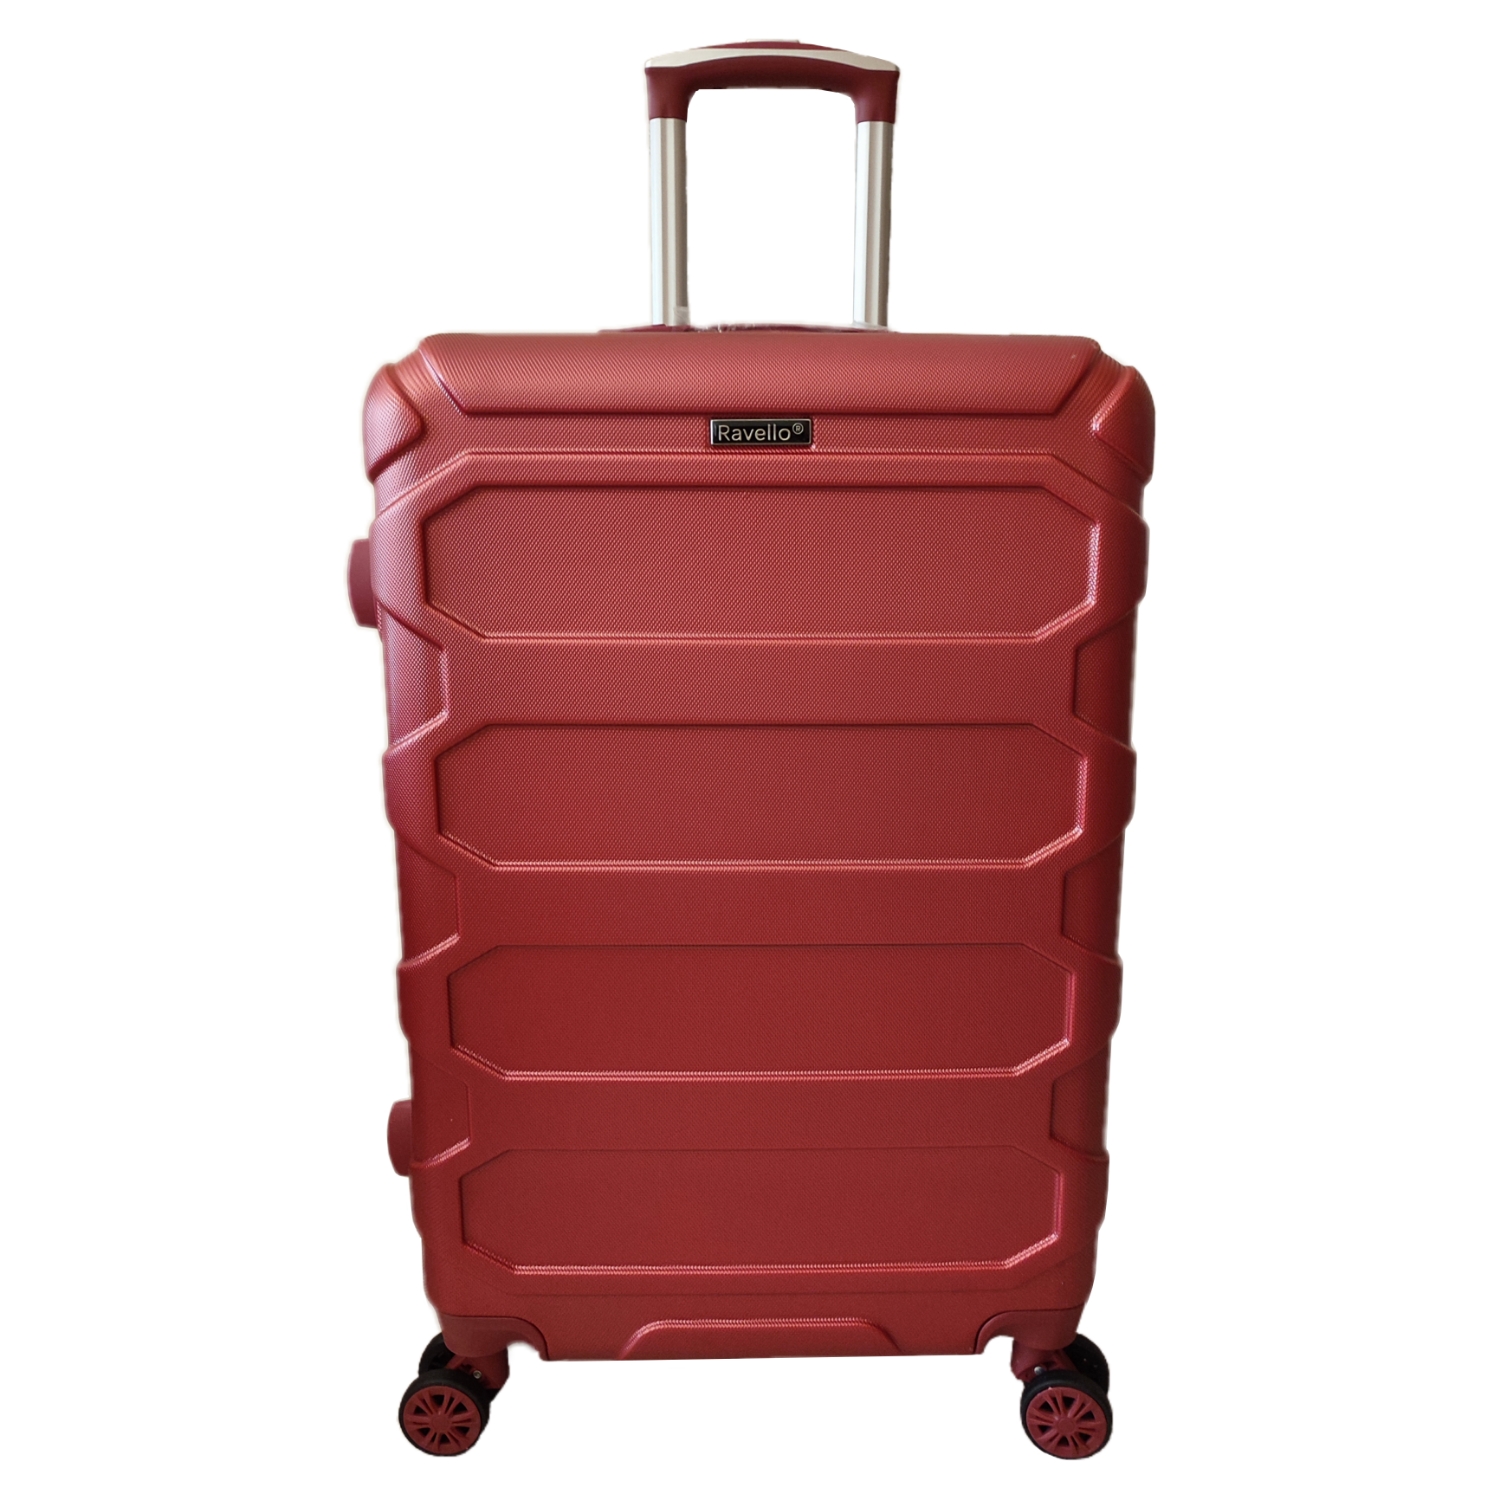 چمدان مدل تراولی ravello سایز متوسط